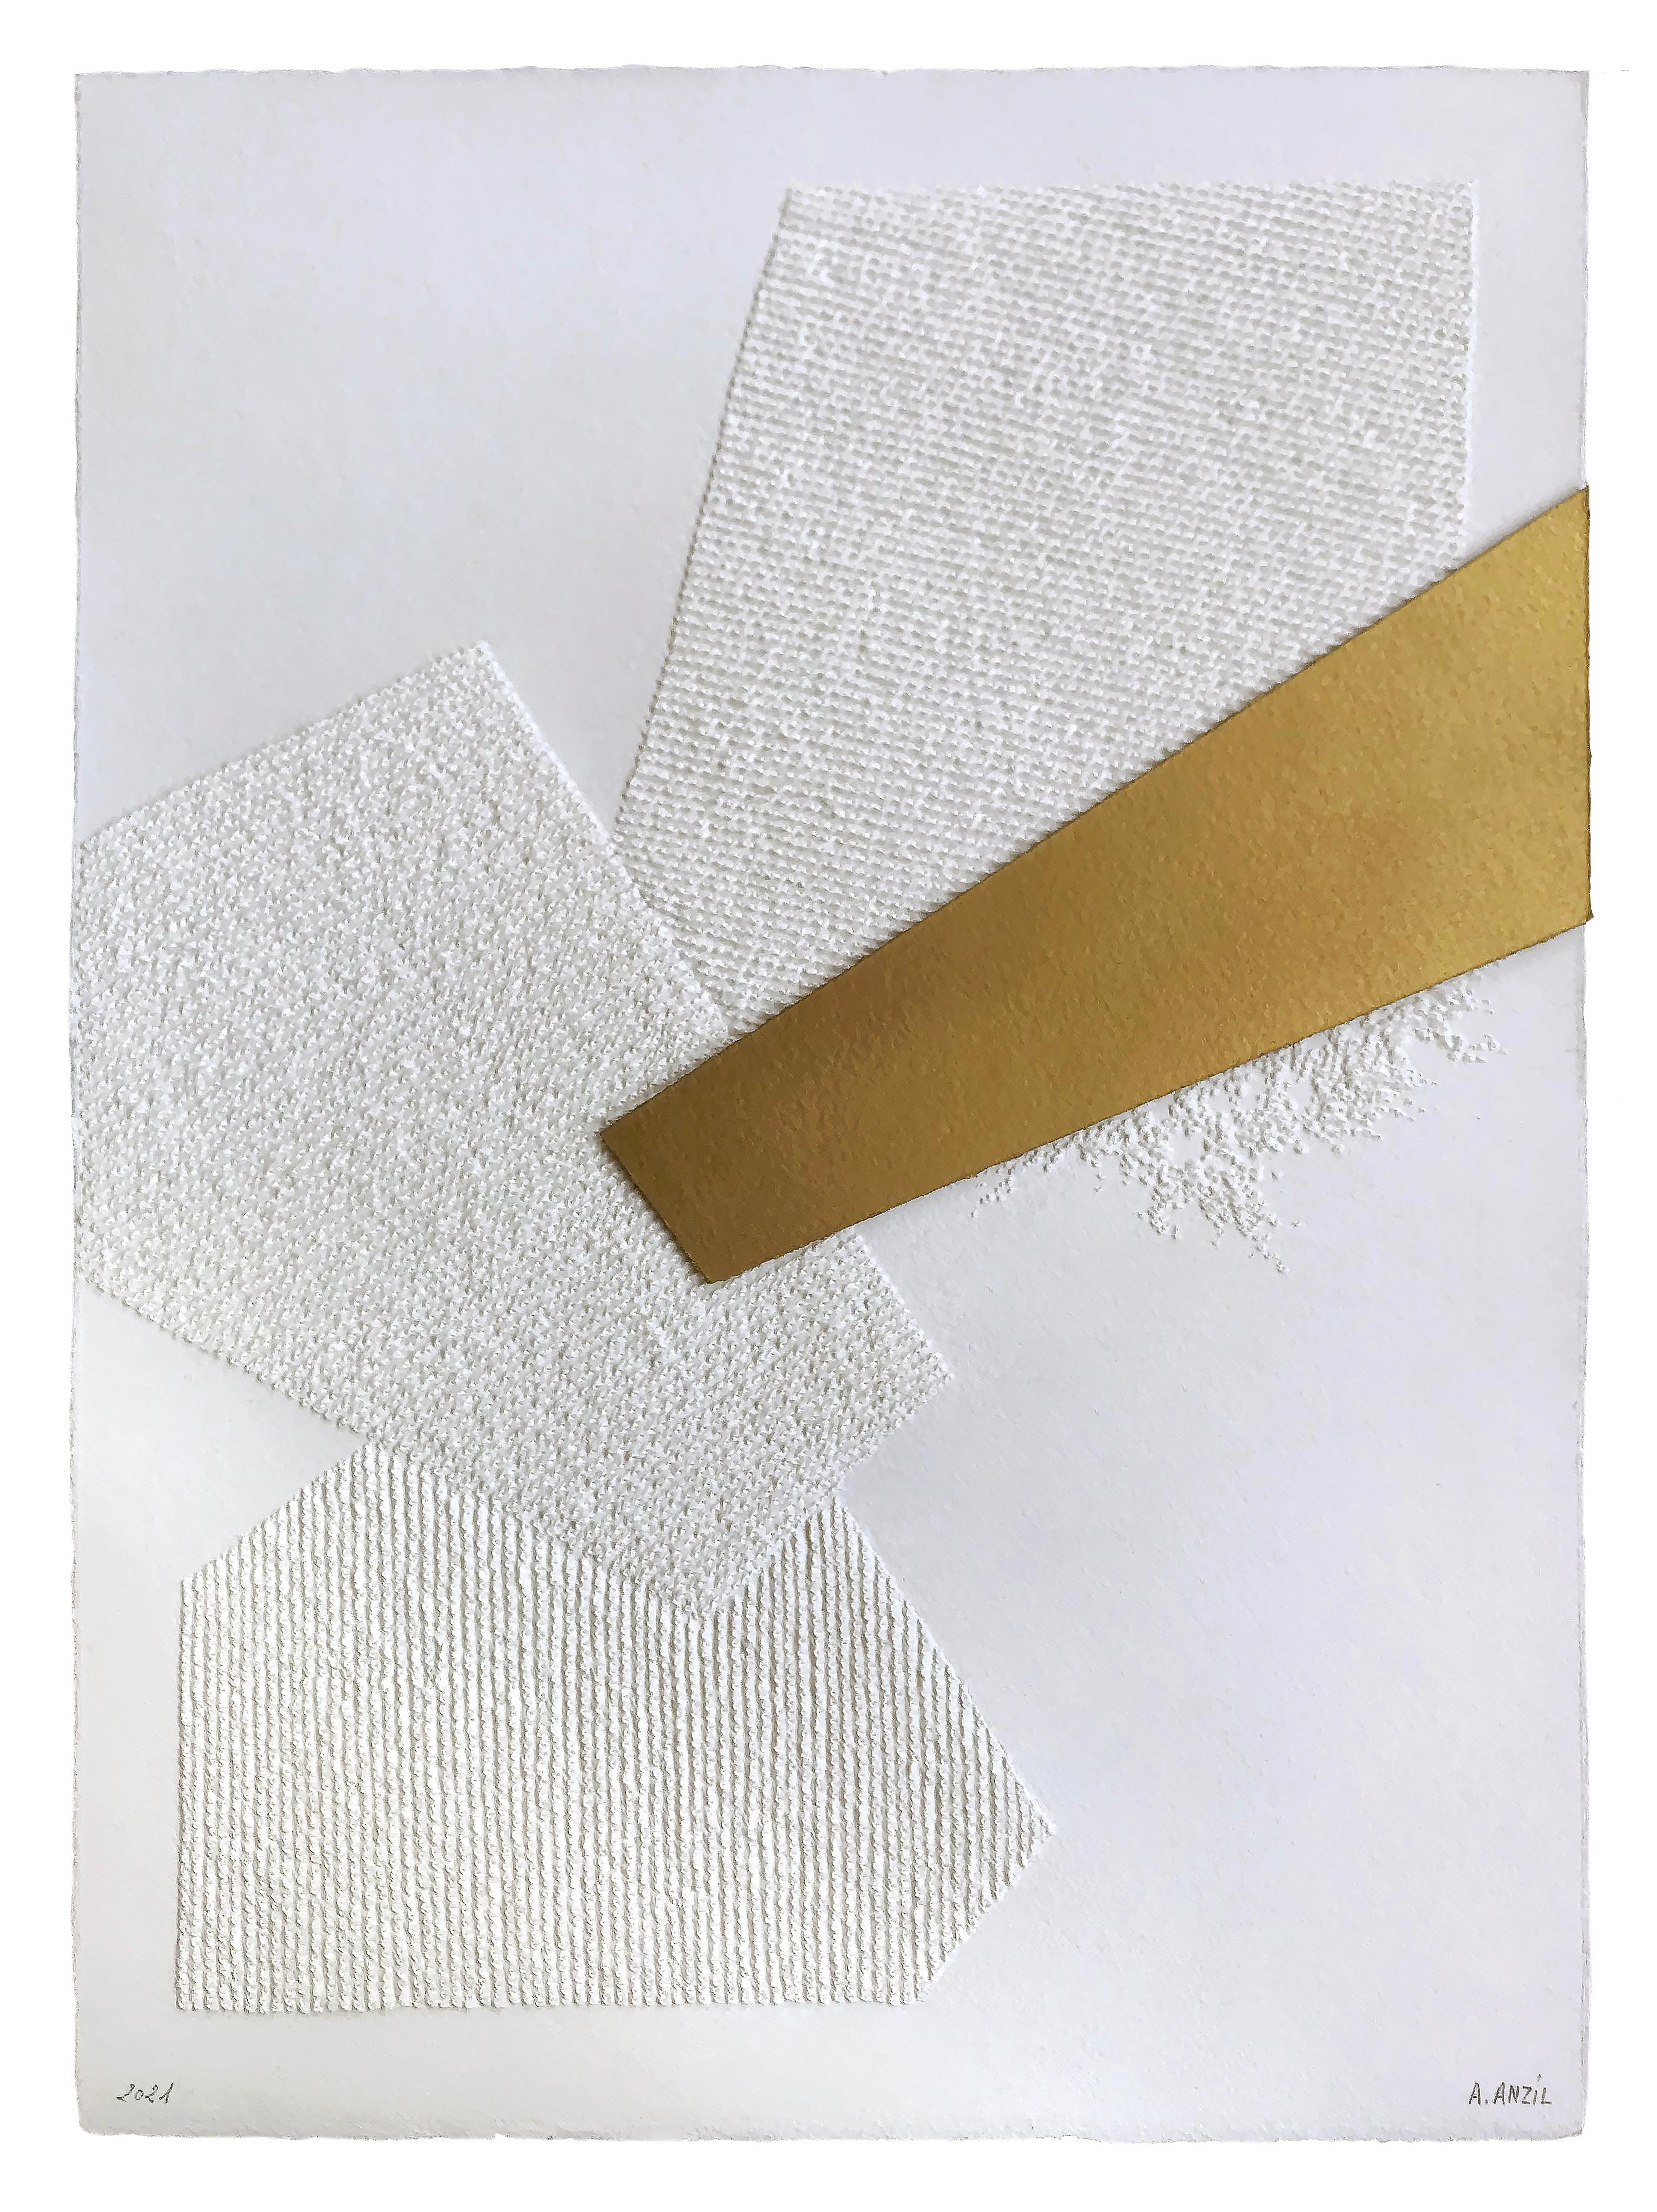 Locus 2 dessins géométriques abstraits en or blanc complexes en 3D et collages sur papier